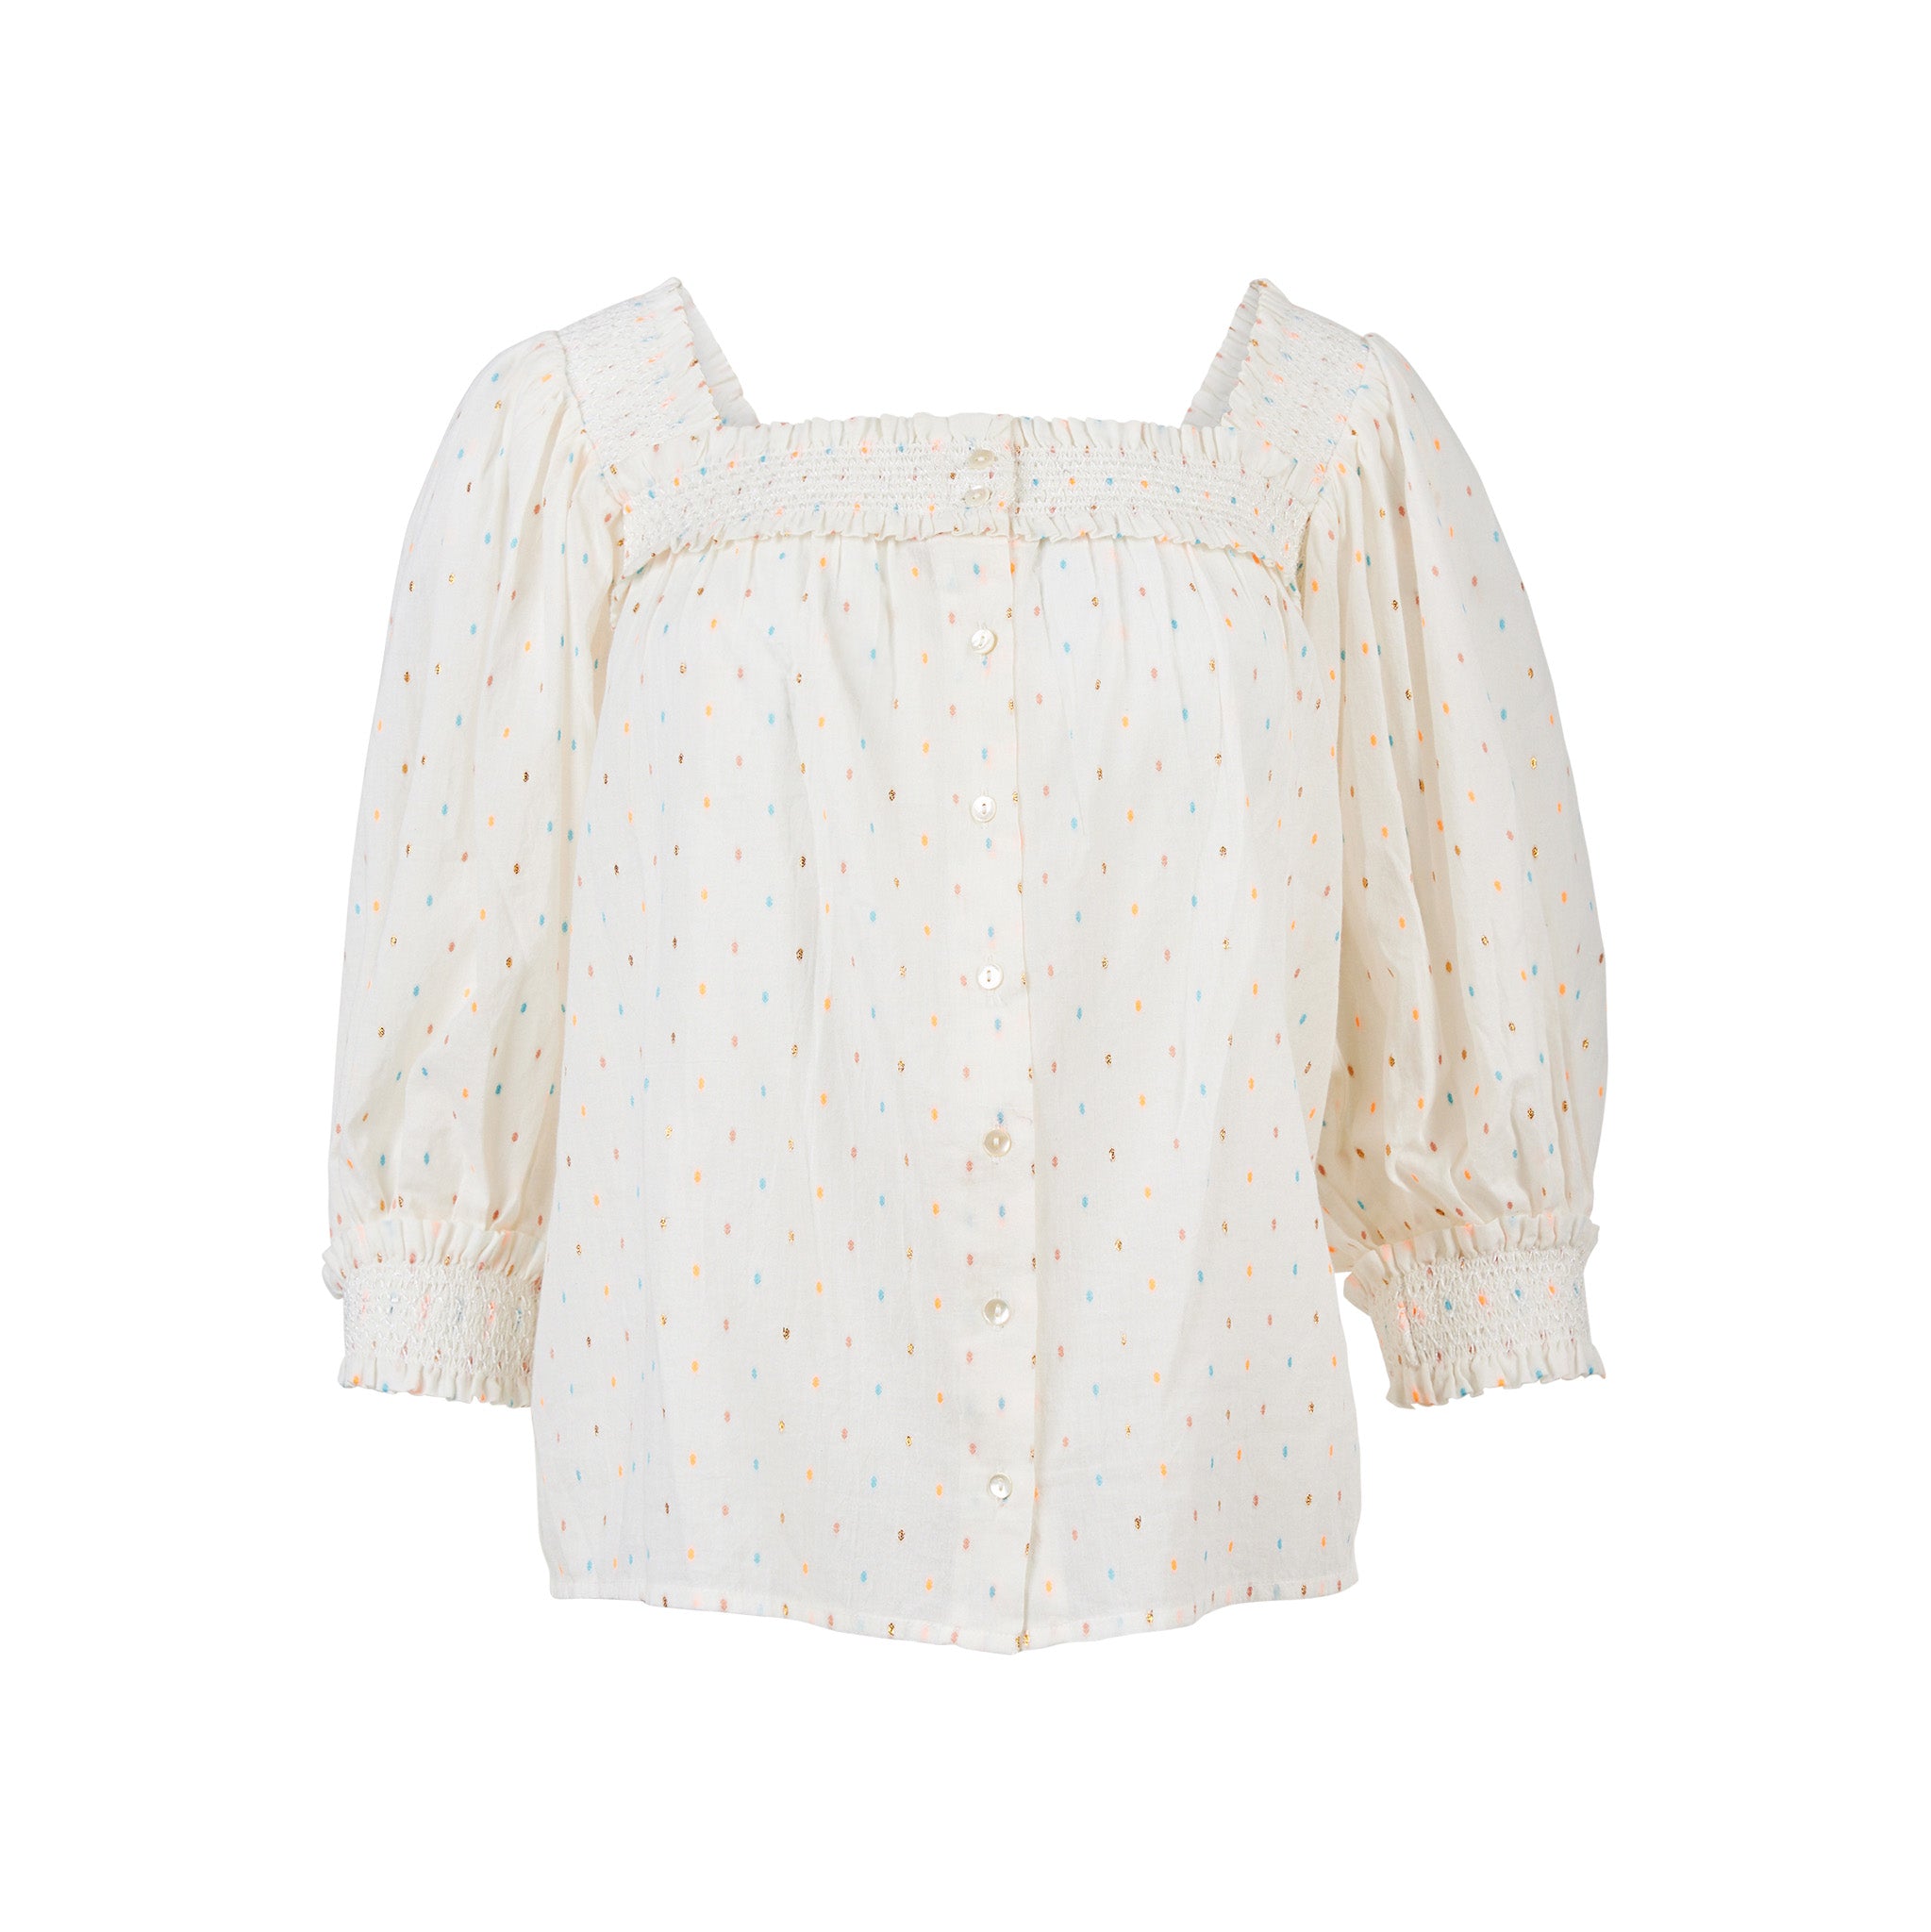 Marianne blouse in Ecru / multi dot